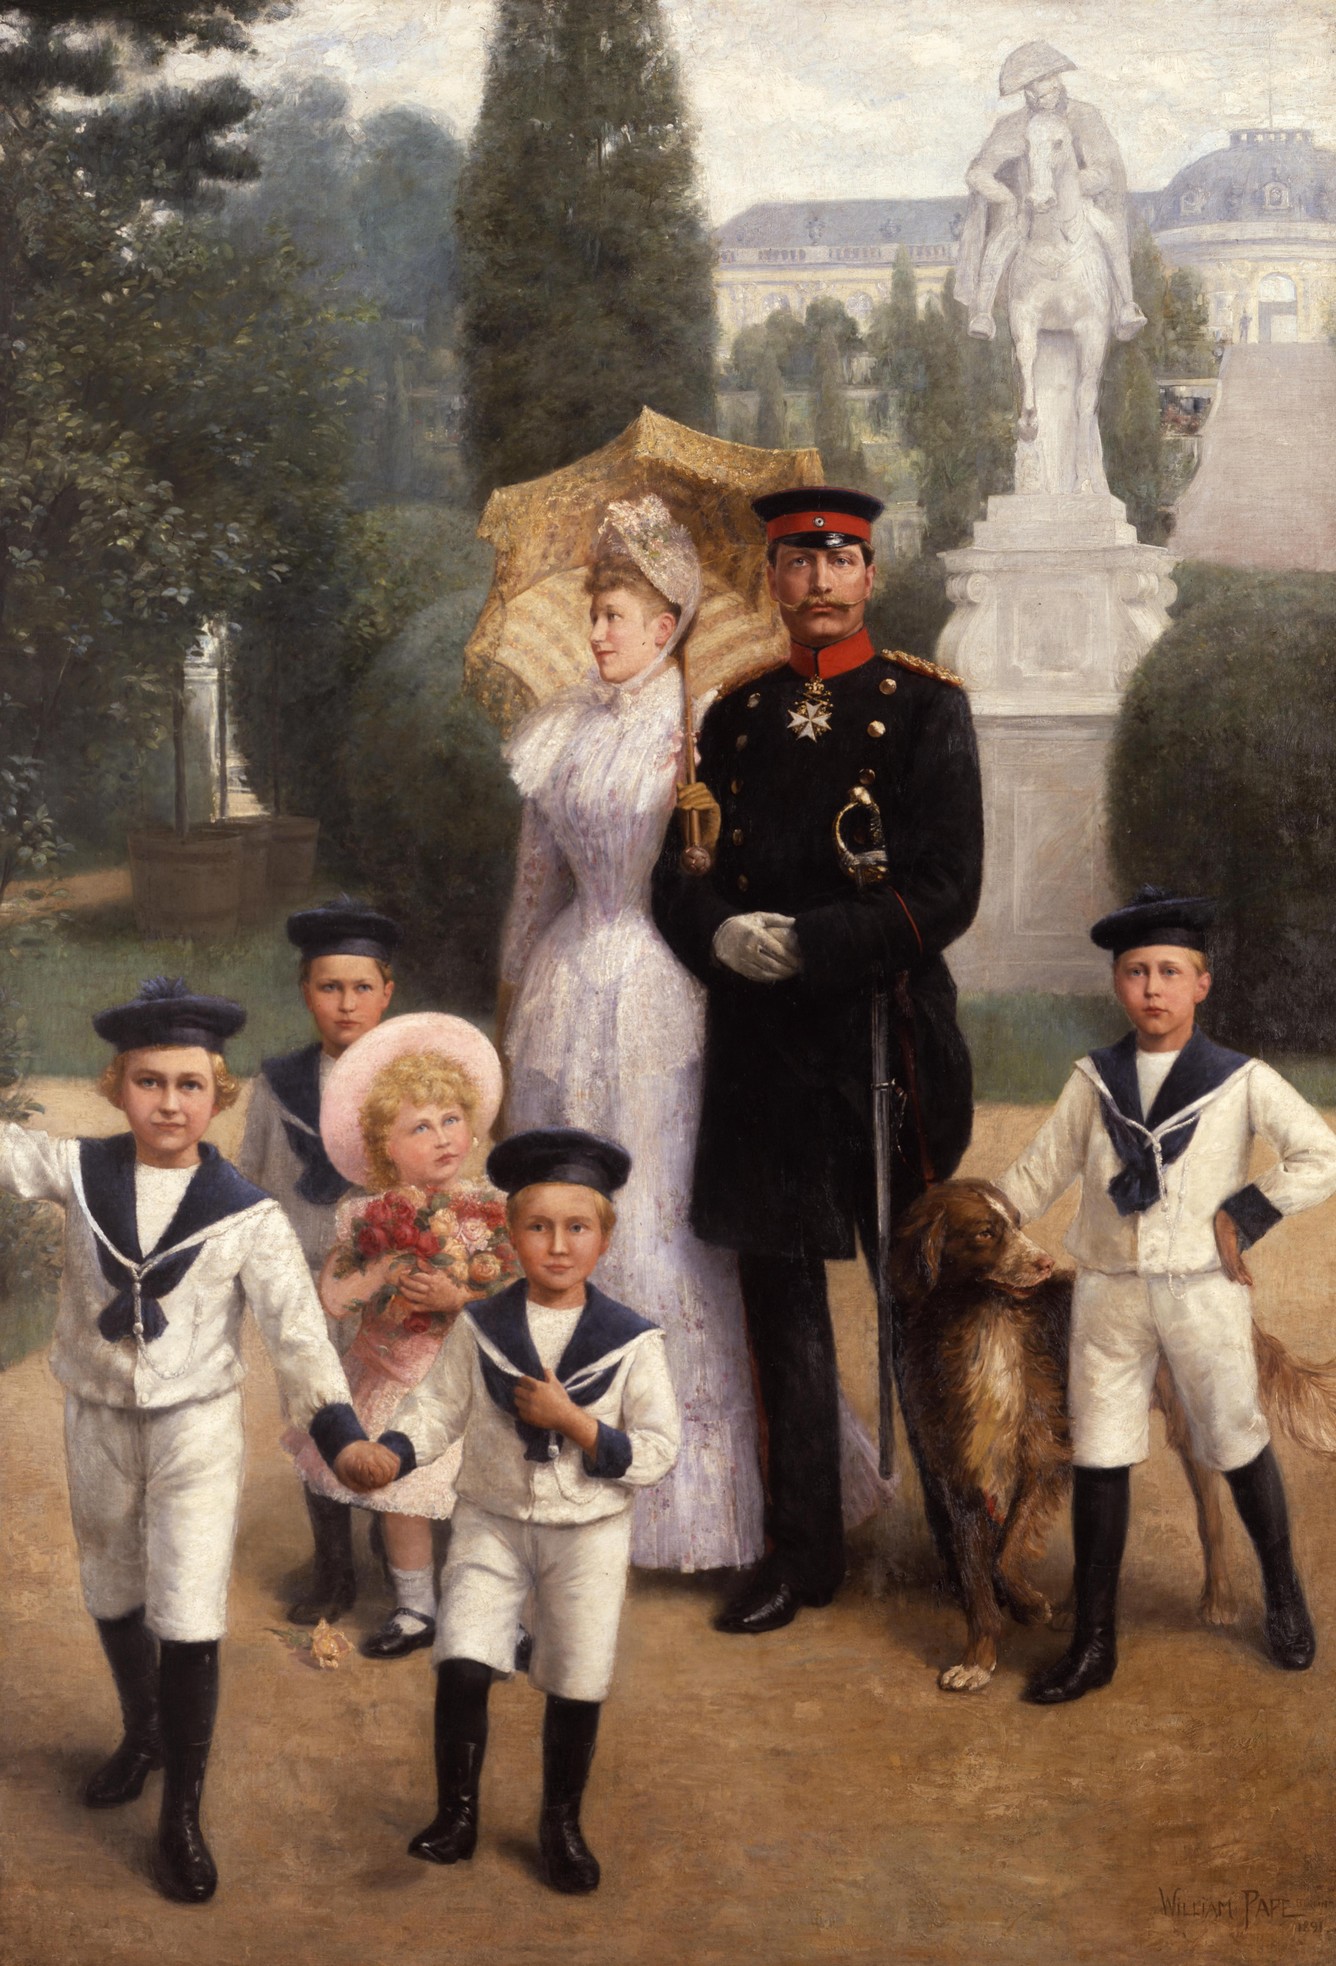 Gemälde: Pape, William Friedrich Georg "Die kaiserliche Familie im Park von Sanssouci", 1891